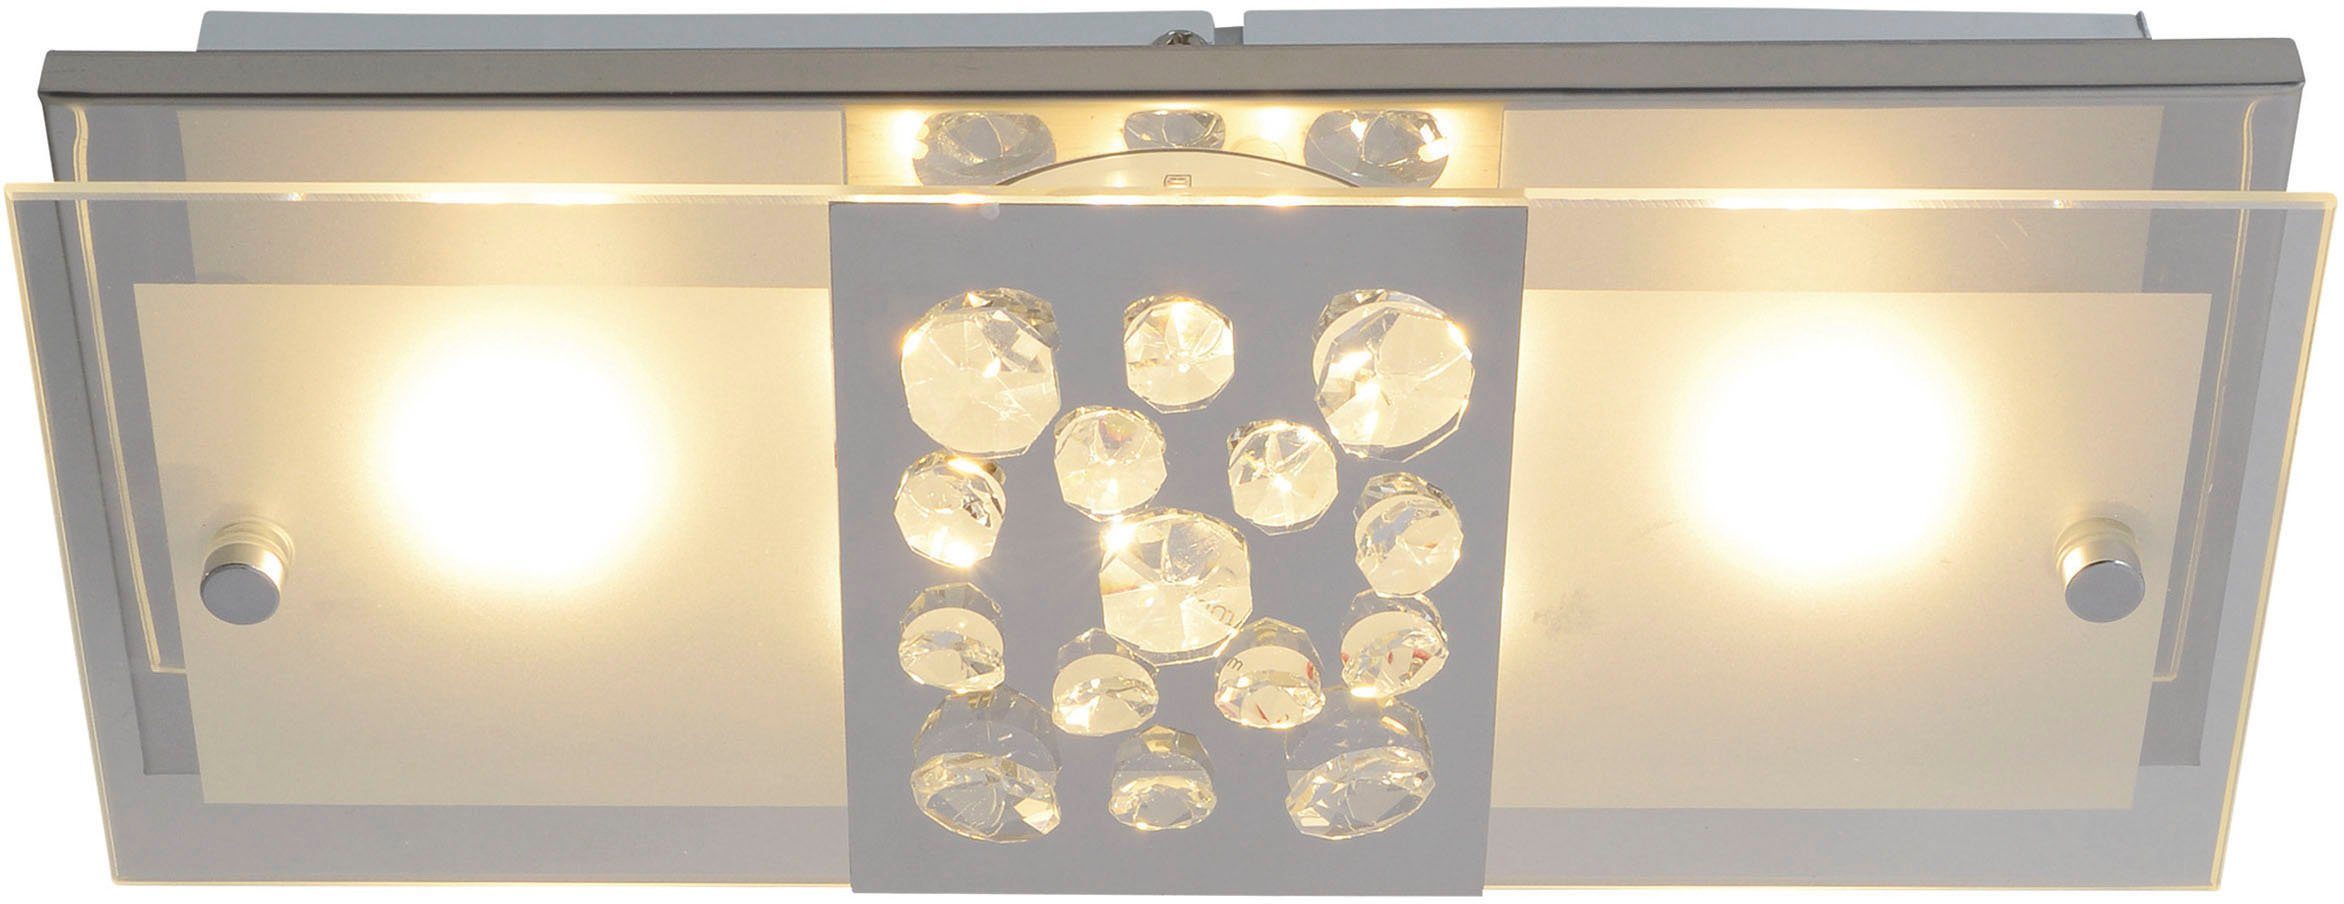 incl. chrom total LED Kristallen, integriert, LED Deckenleuchte teilsatiniert näve Warmweiß, Chur, fest LED 11W mit